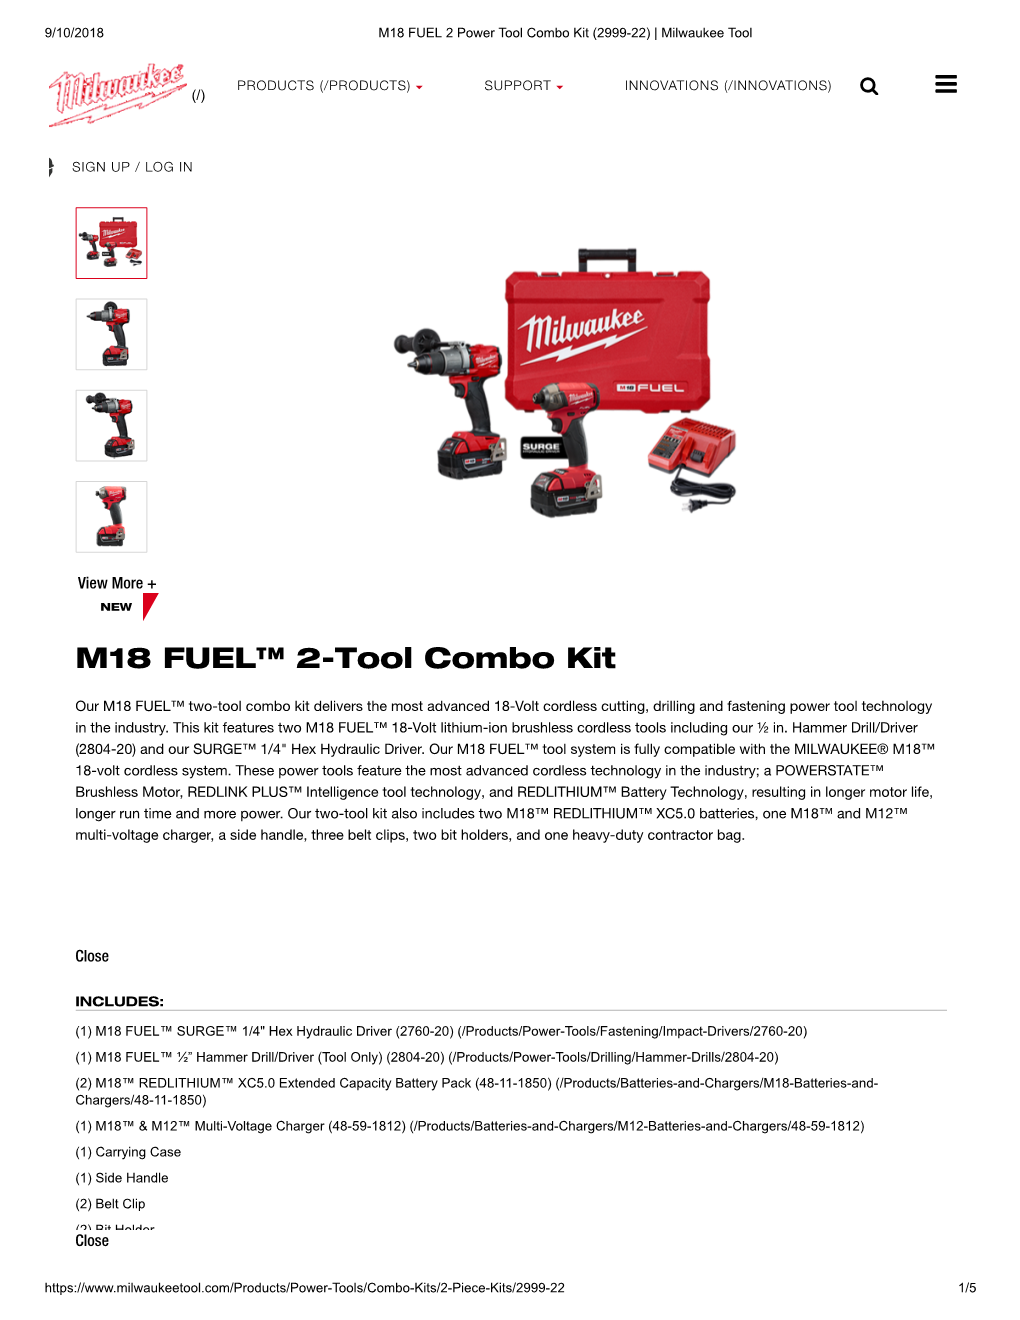 M18 FUEL™ 2-Tool Combo Kit